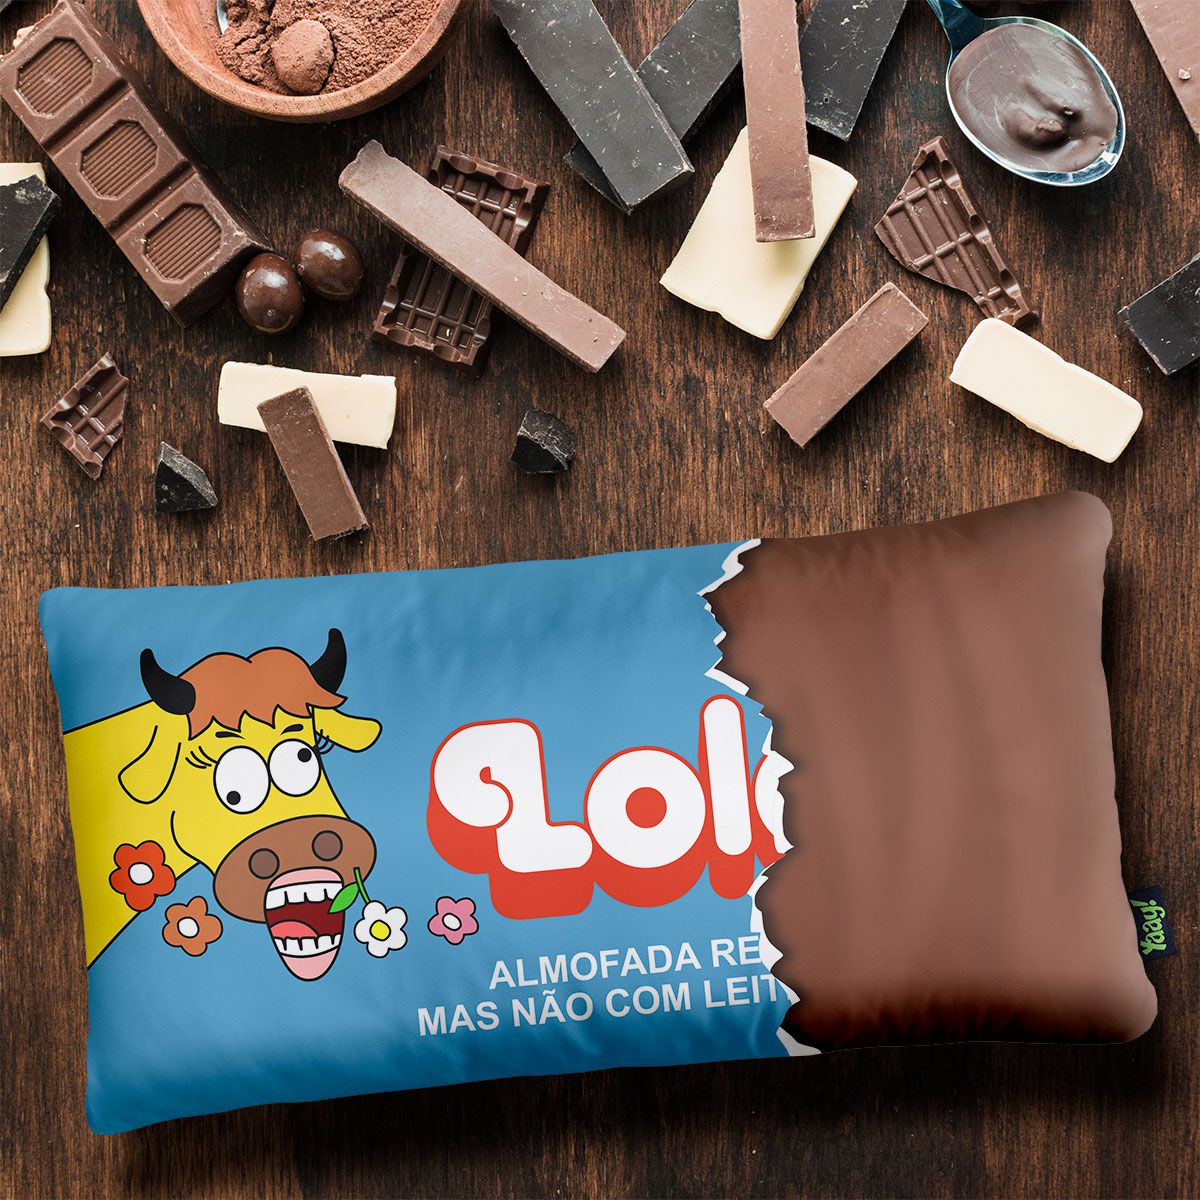 Almofada Retr Chocolate Lolol Edi O Especial Naked Loja De Presentes Criativos Loja De